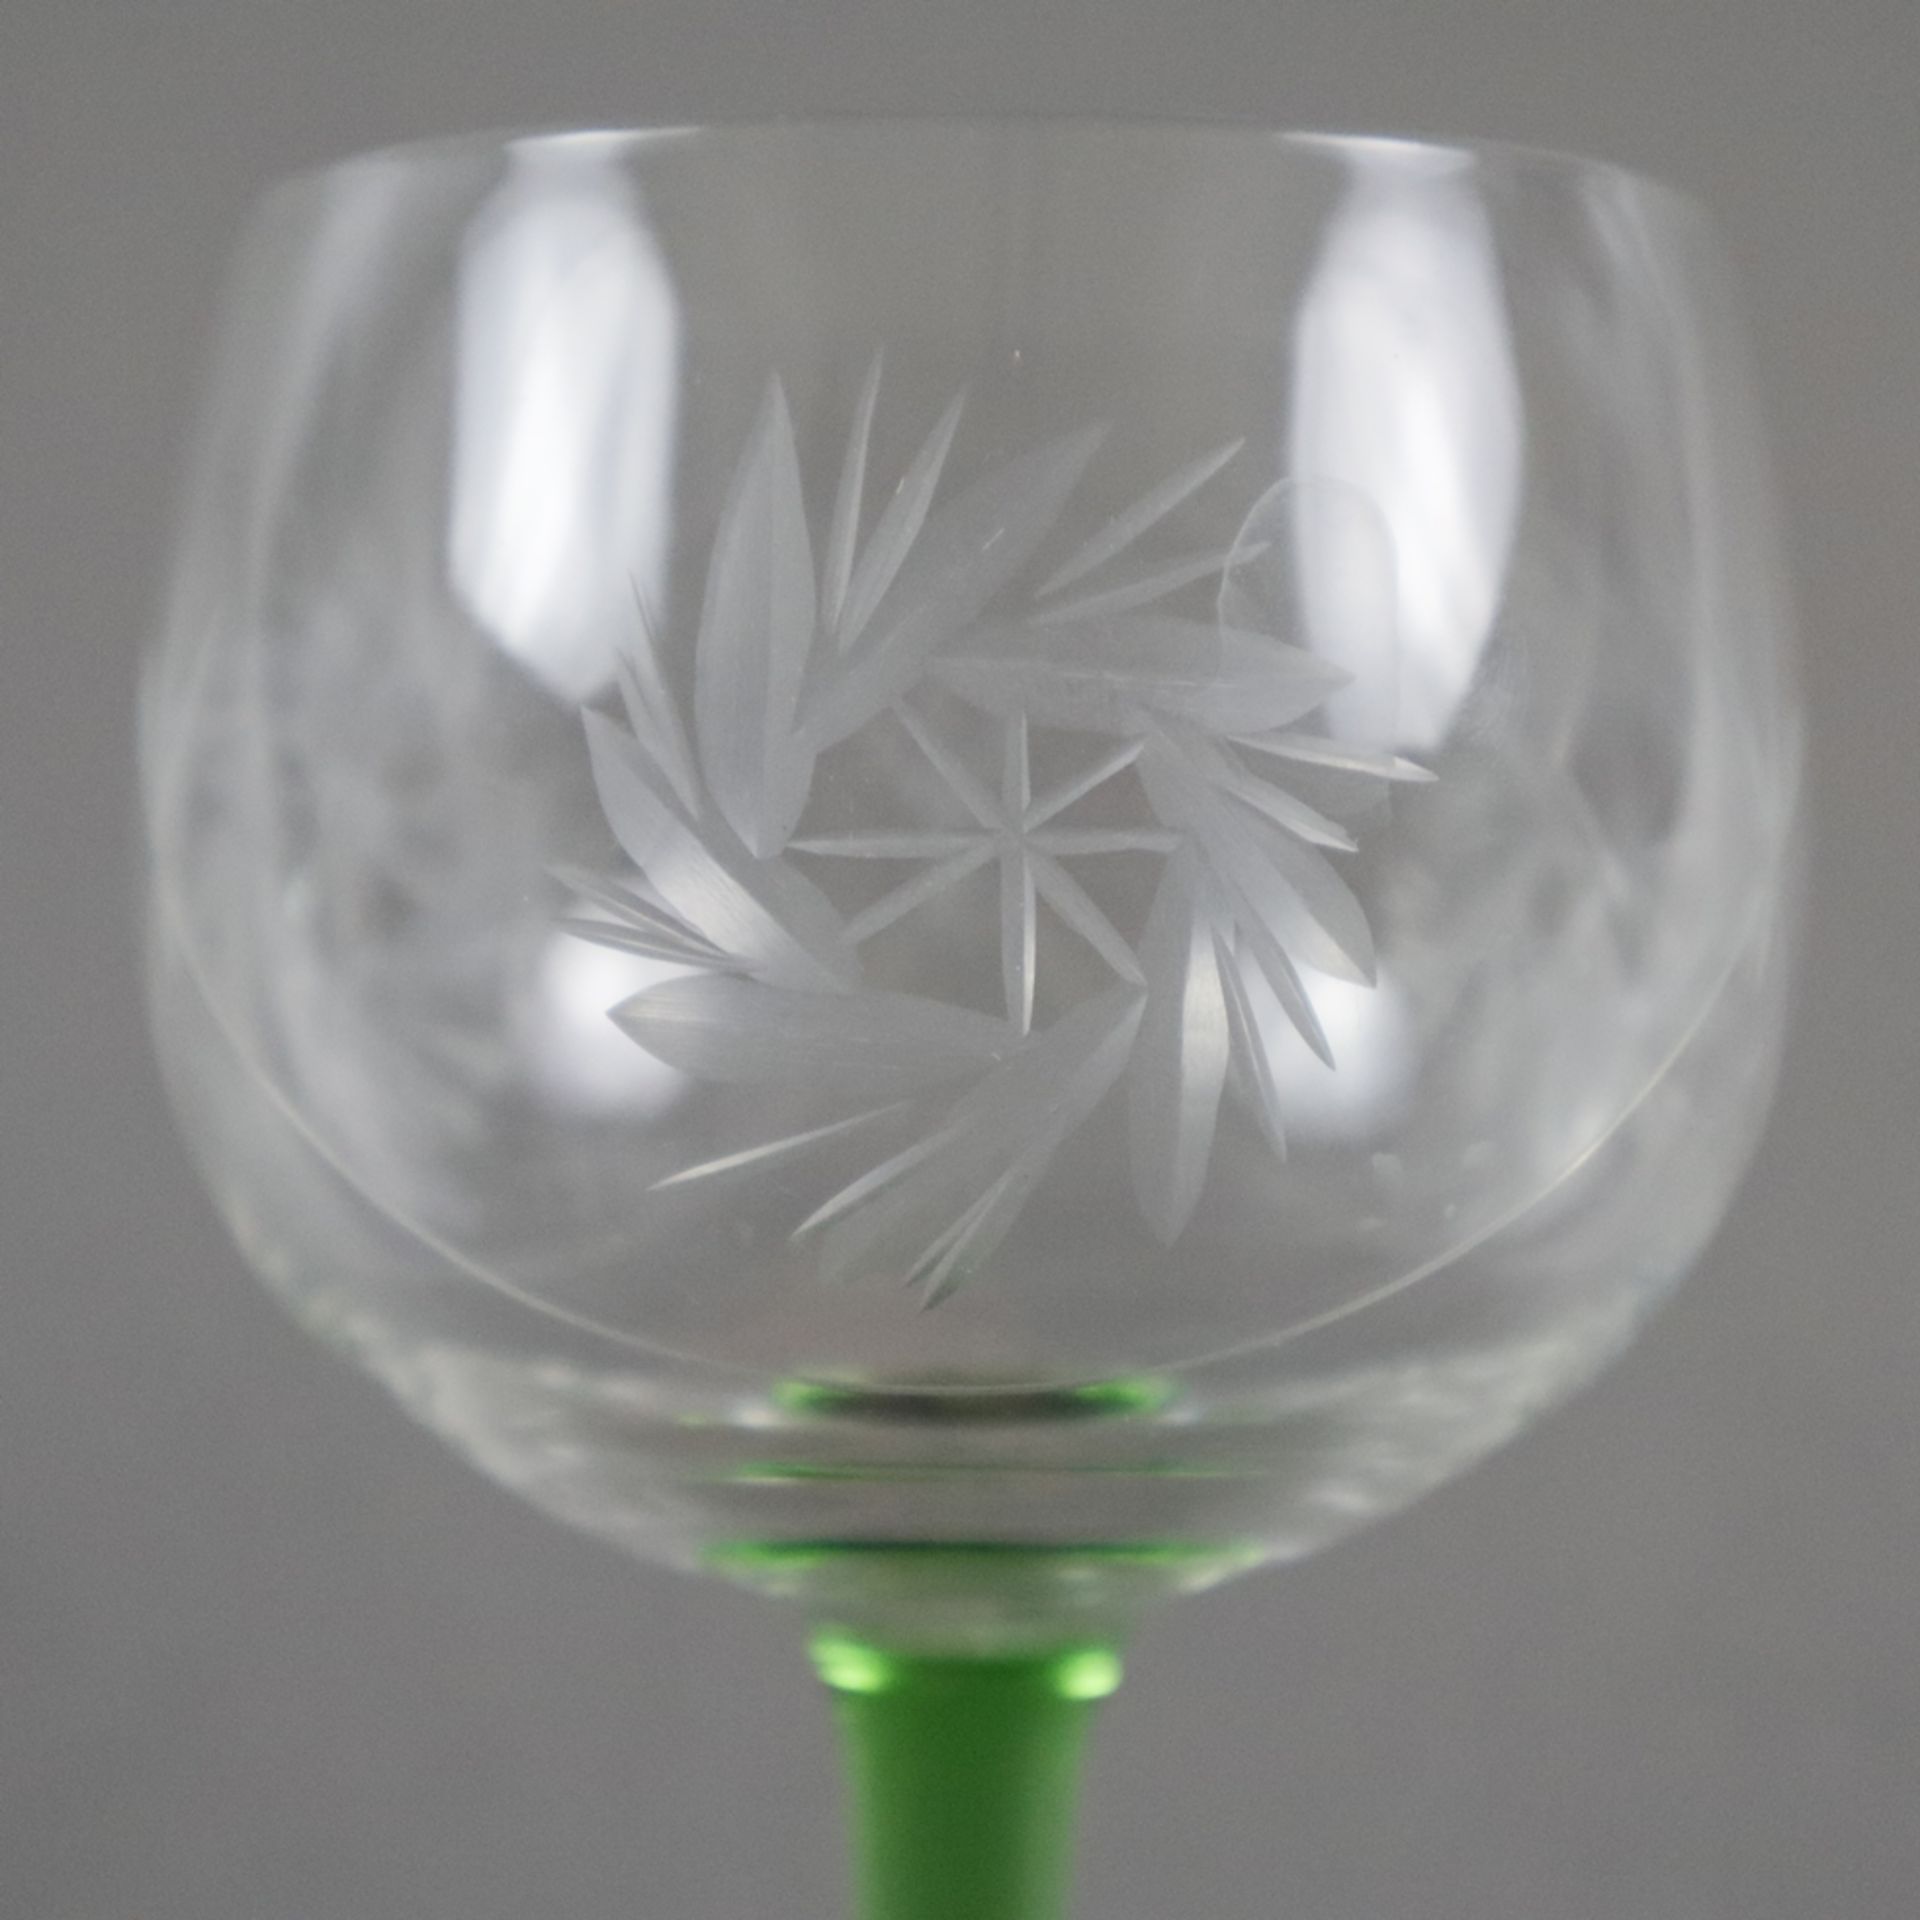 Vier Fußgläser - Kelch farbloses Glas mit Gravurdekor, Schaft und Rundfuß grünes Glas (1x im Farbto - Image 3 of 4